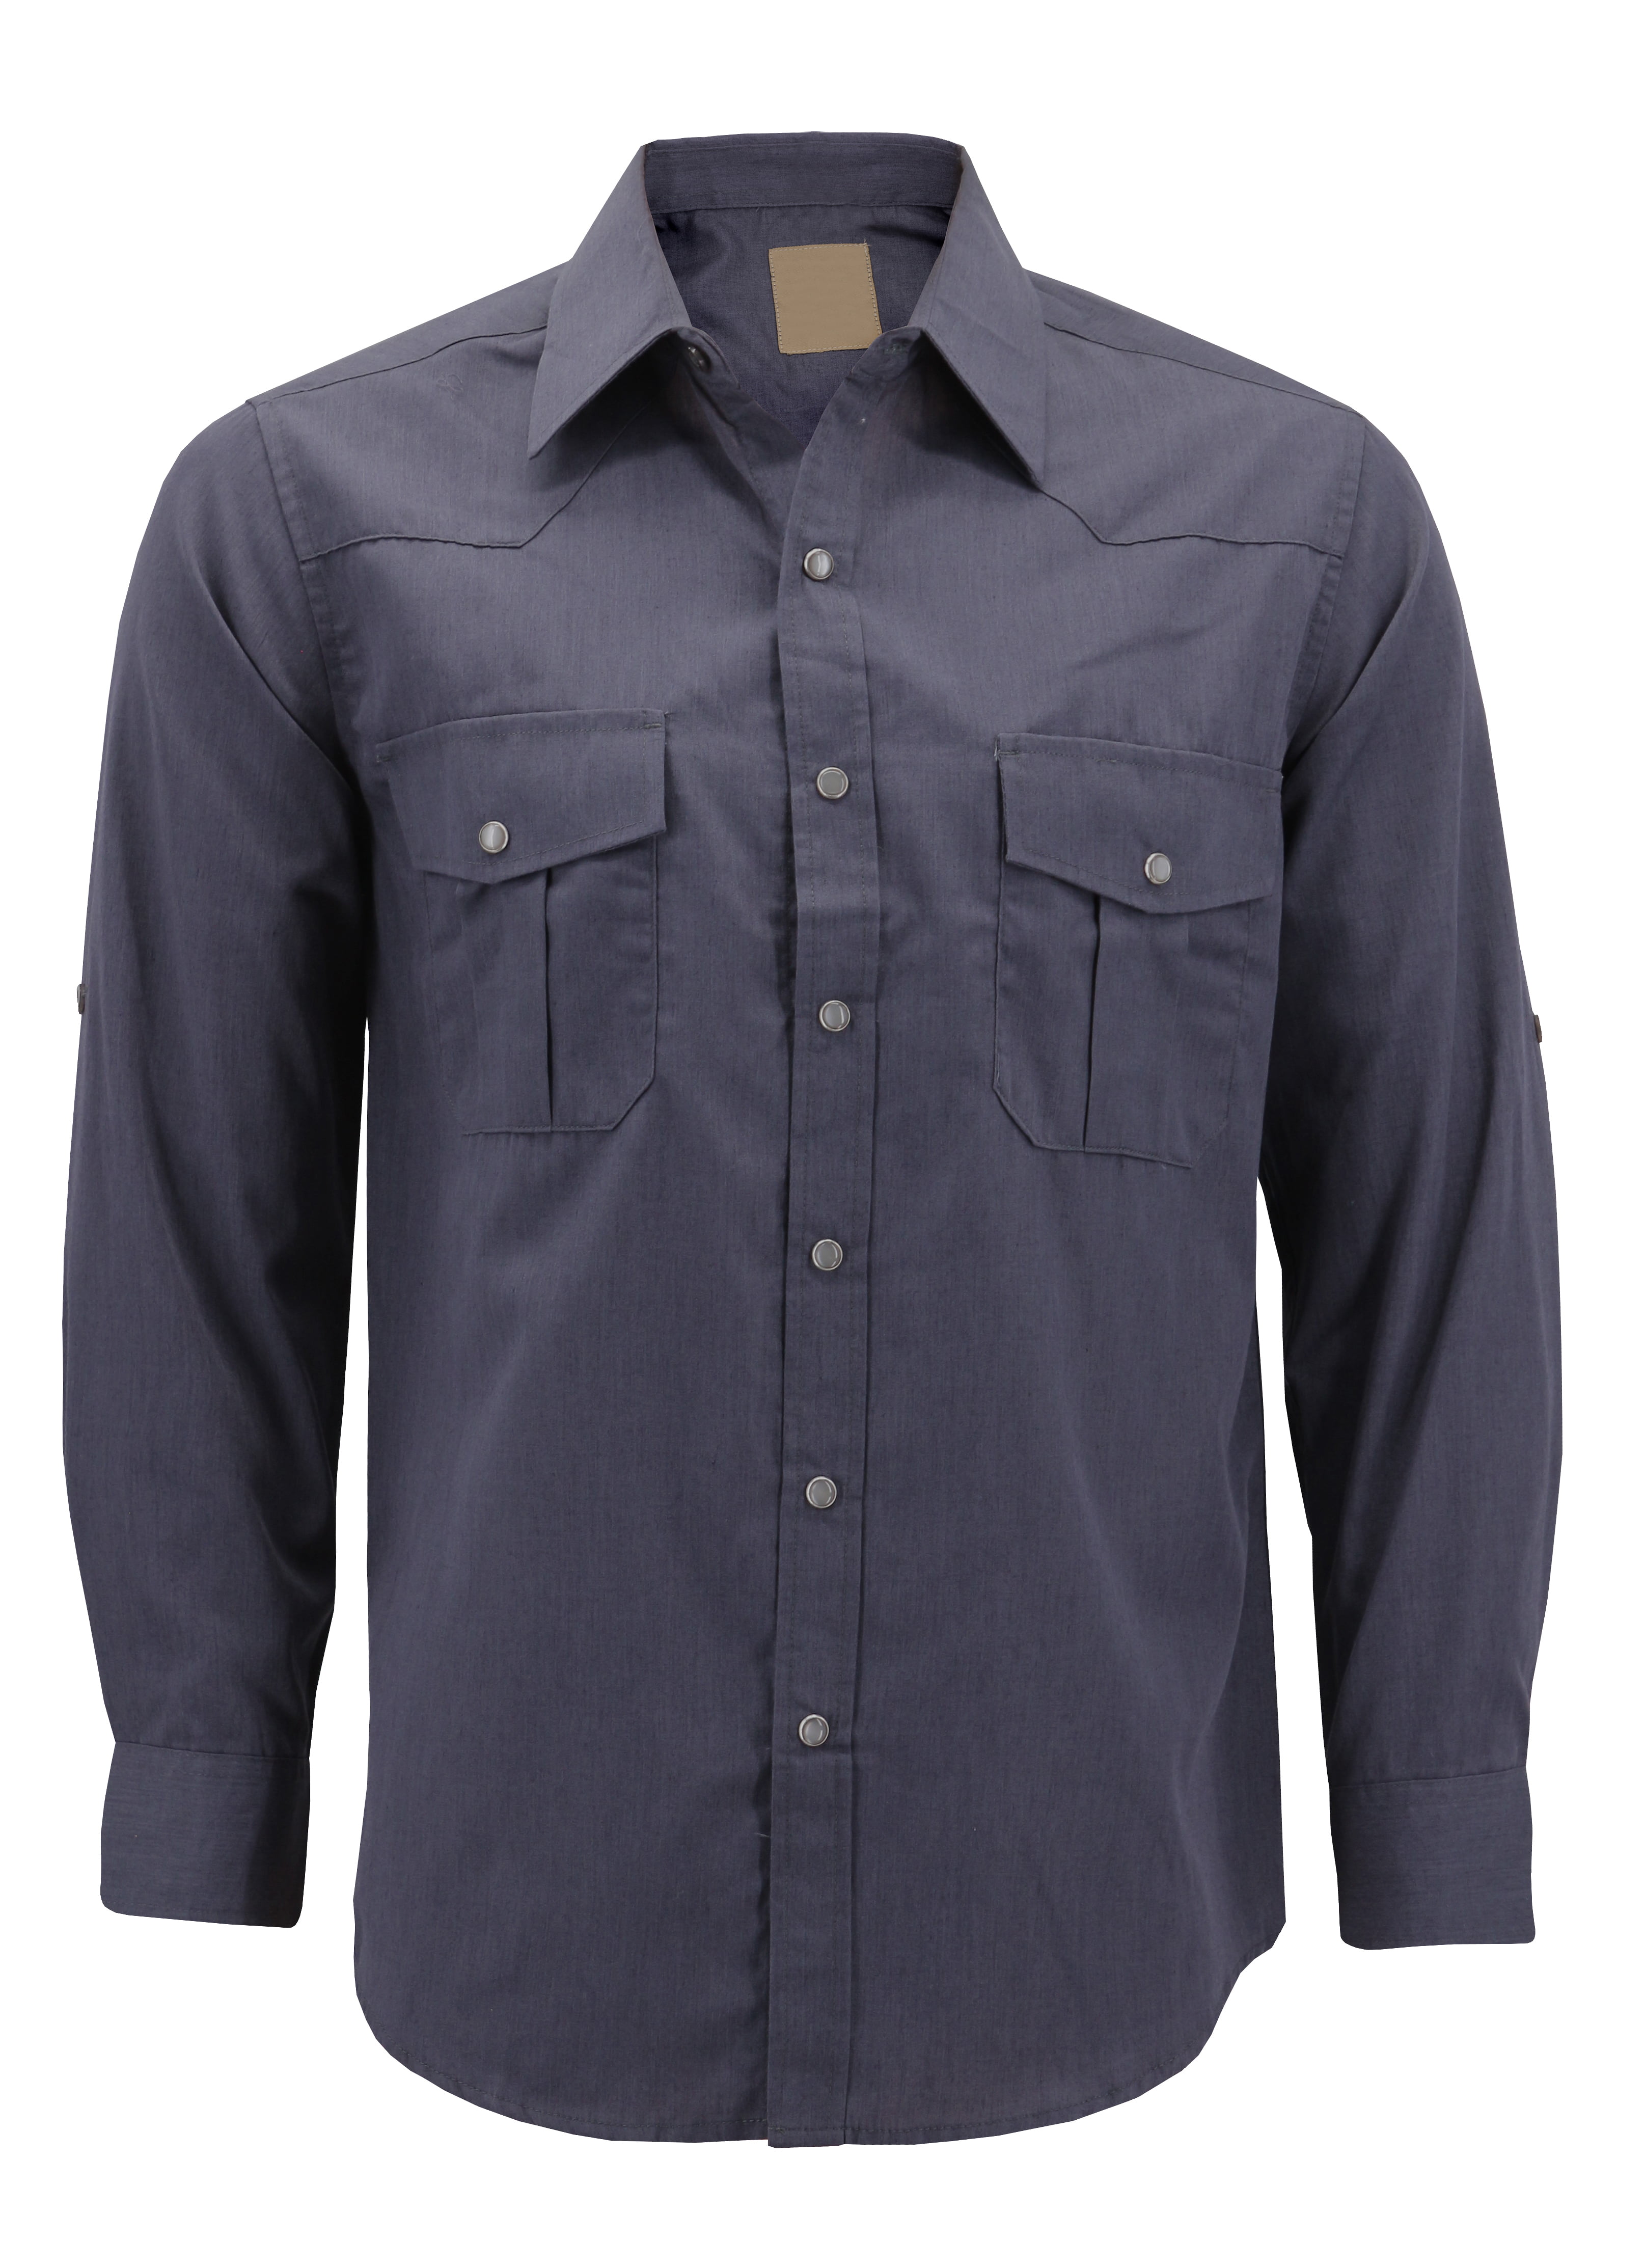 Fiere Mens Simple Business Button Western Shirt Long-Sleeve Dress Shirts